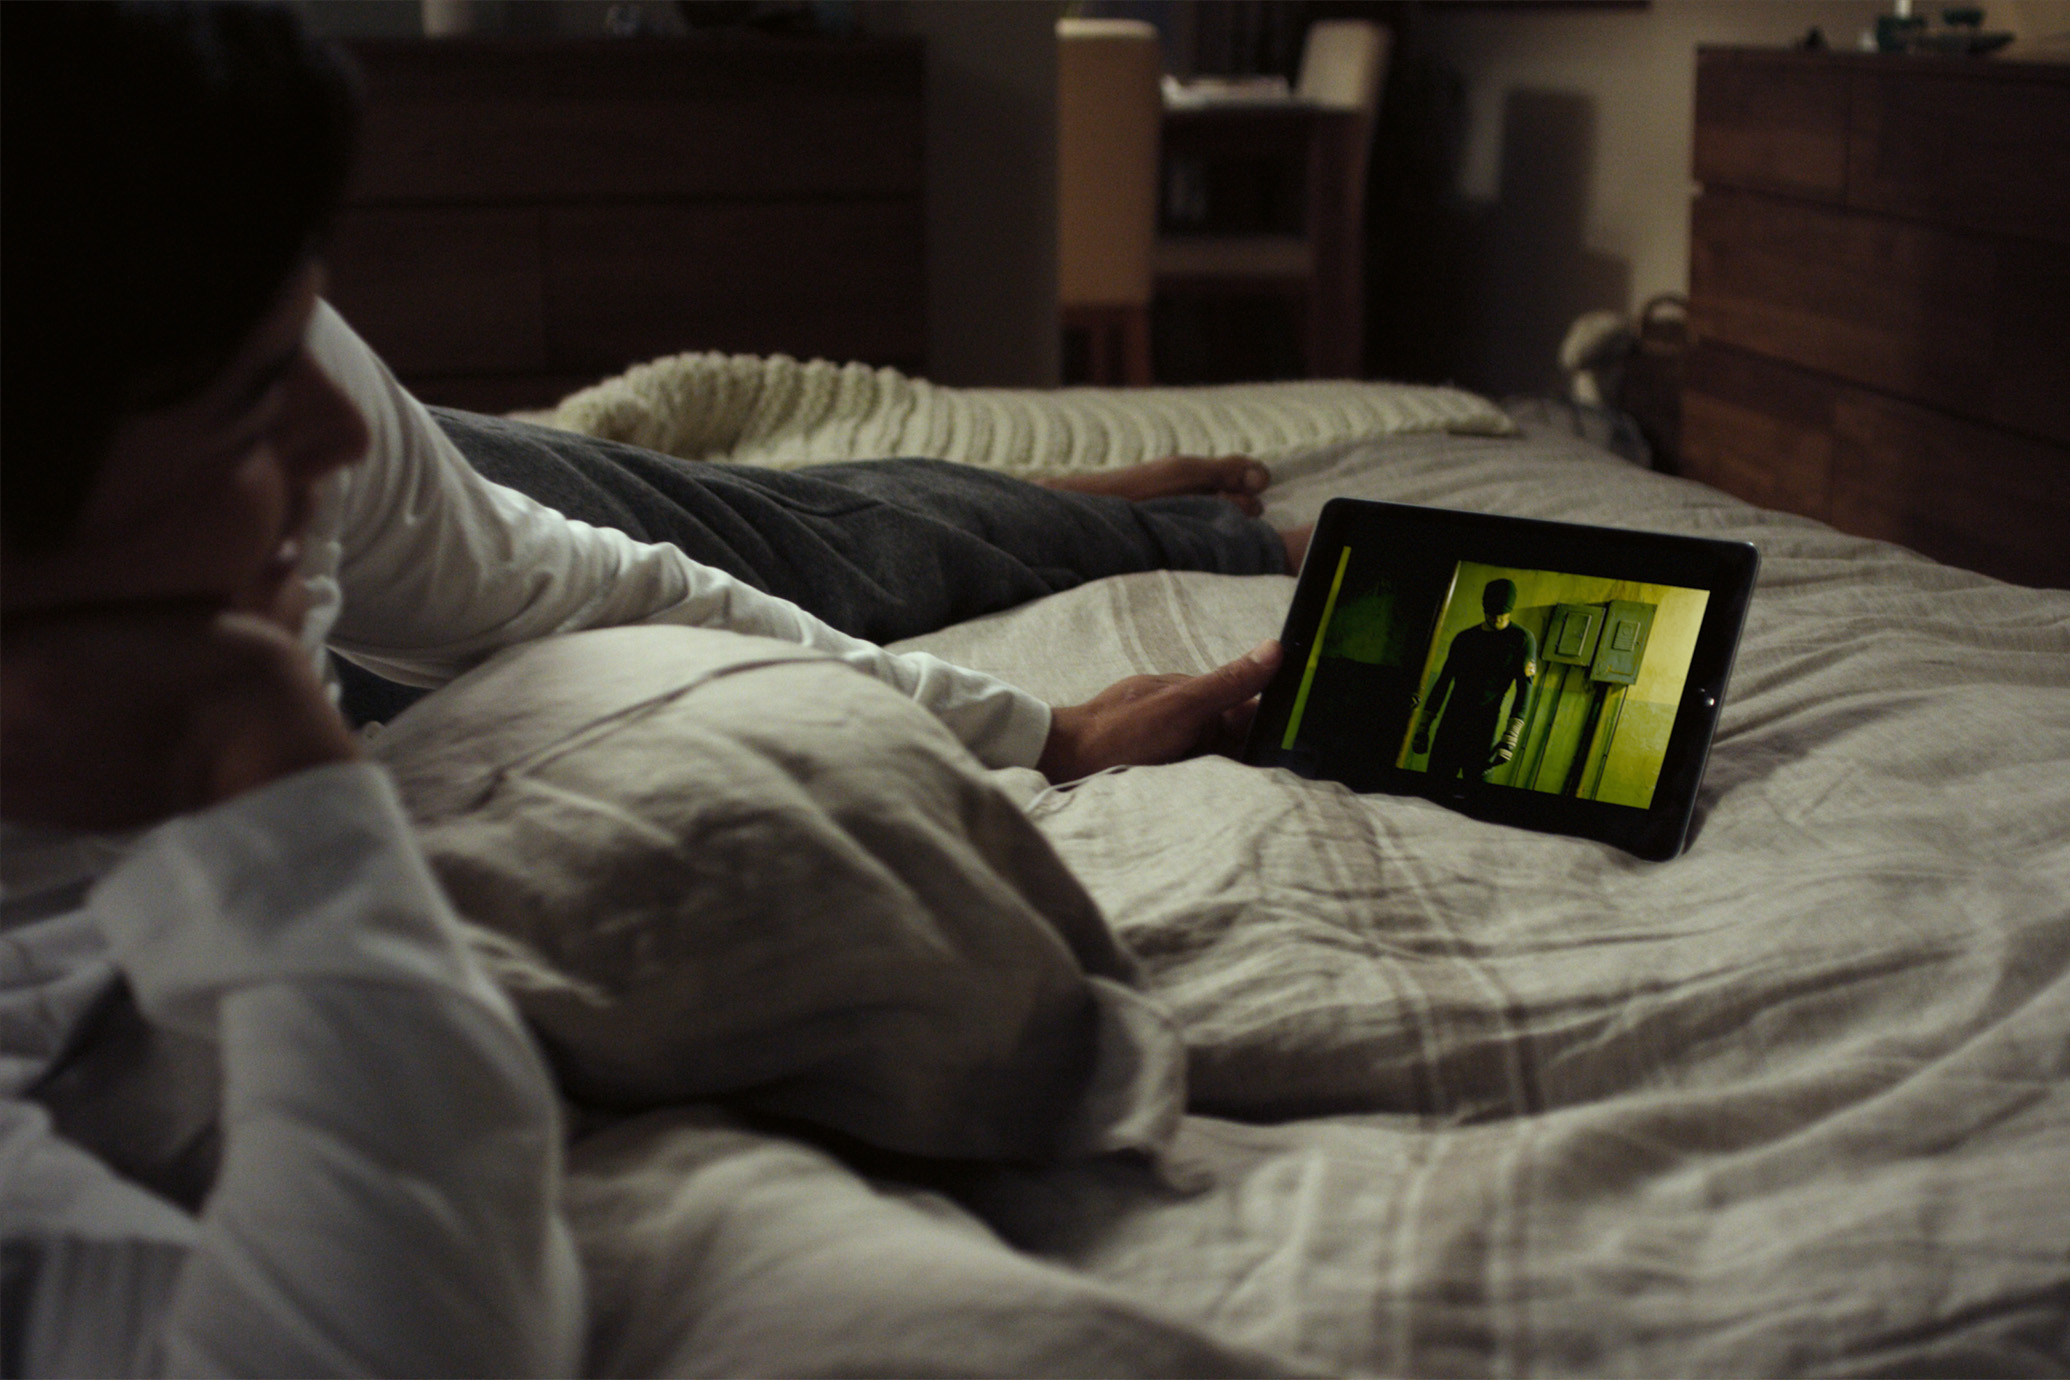 Watch movie s. Человек с телефоном в кровати. Вечер перед телевизором. Человек перед телевизором.